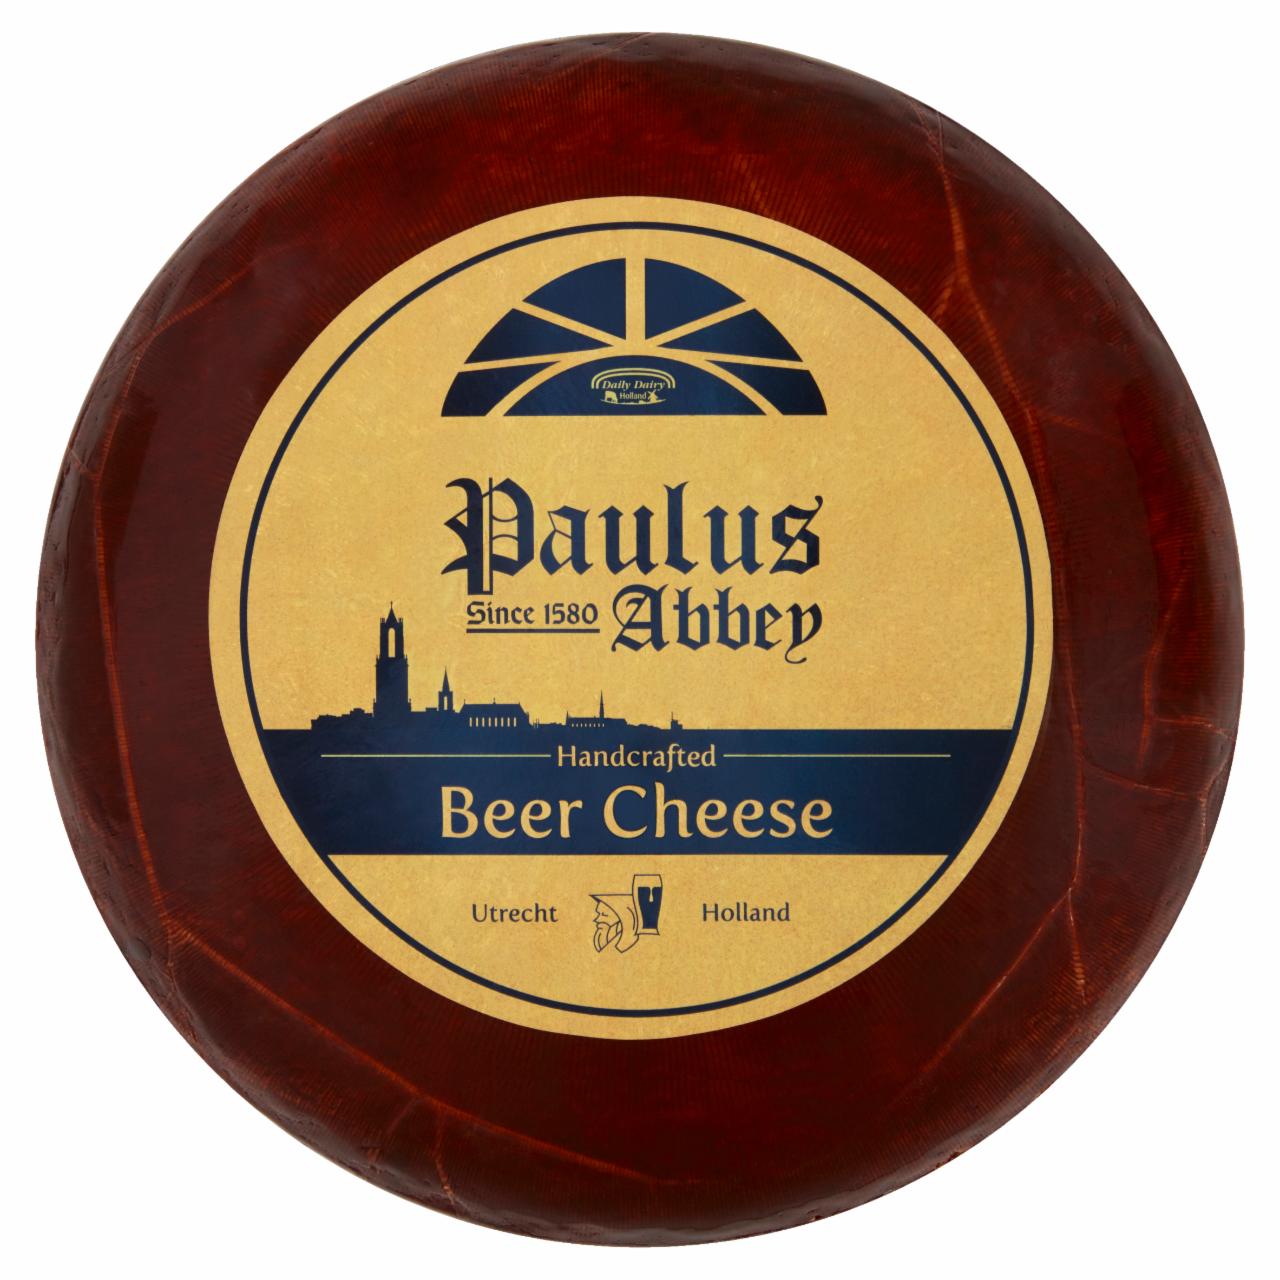 Képek - Paulus Abbey oltott, érő sajt, sör ízesítéssel és komlókivonattal